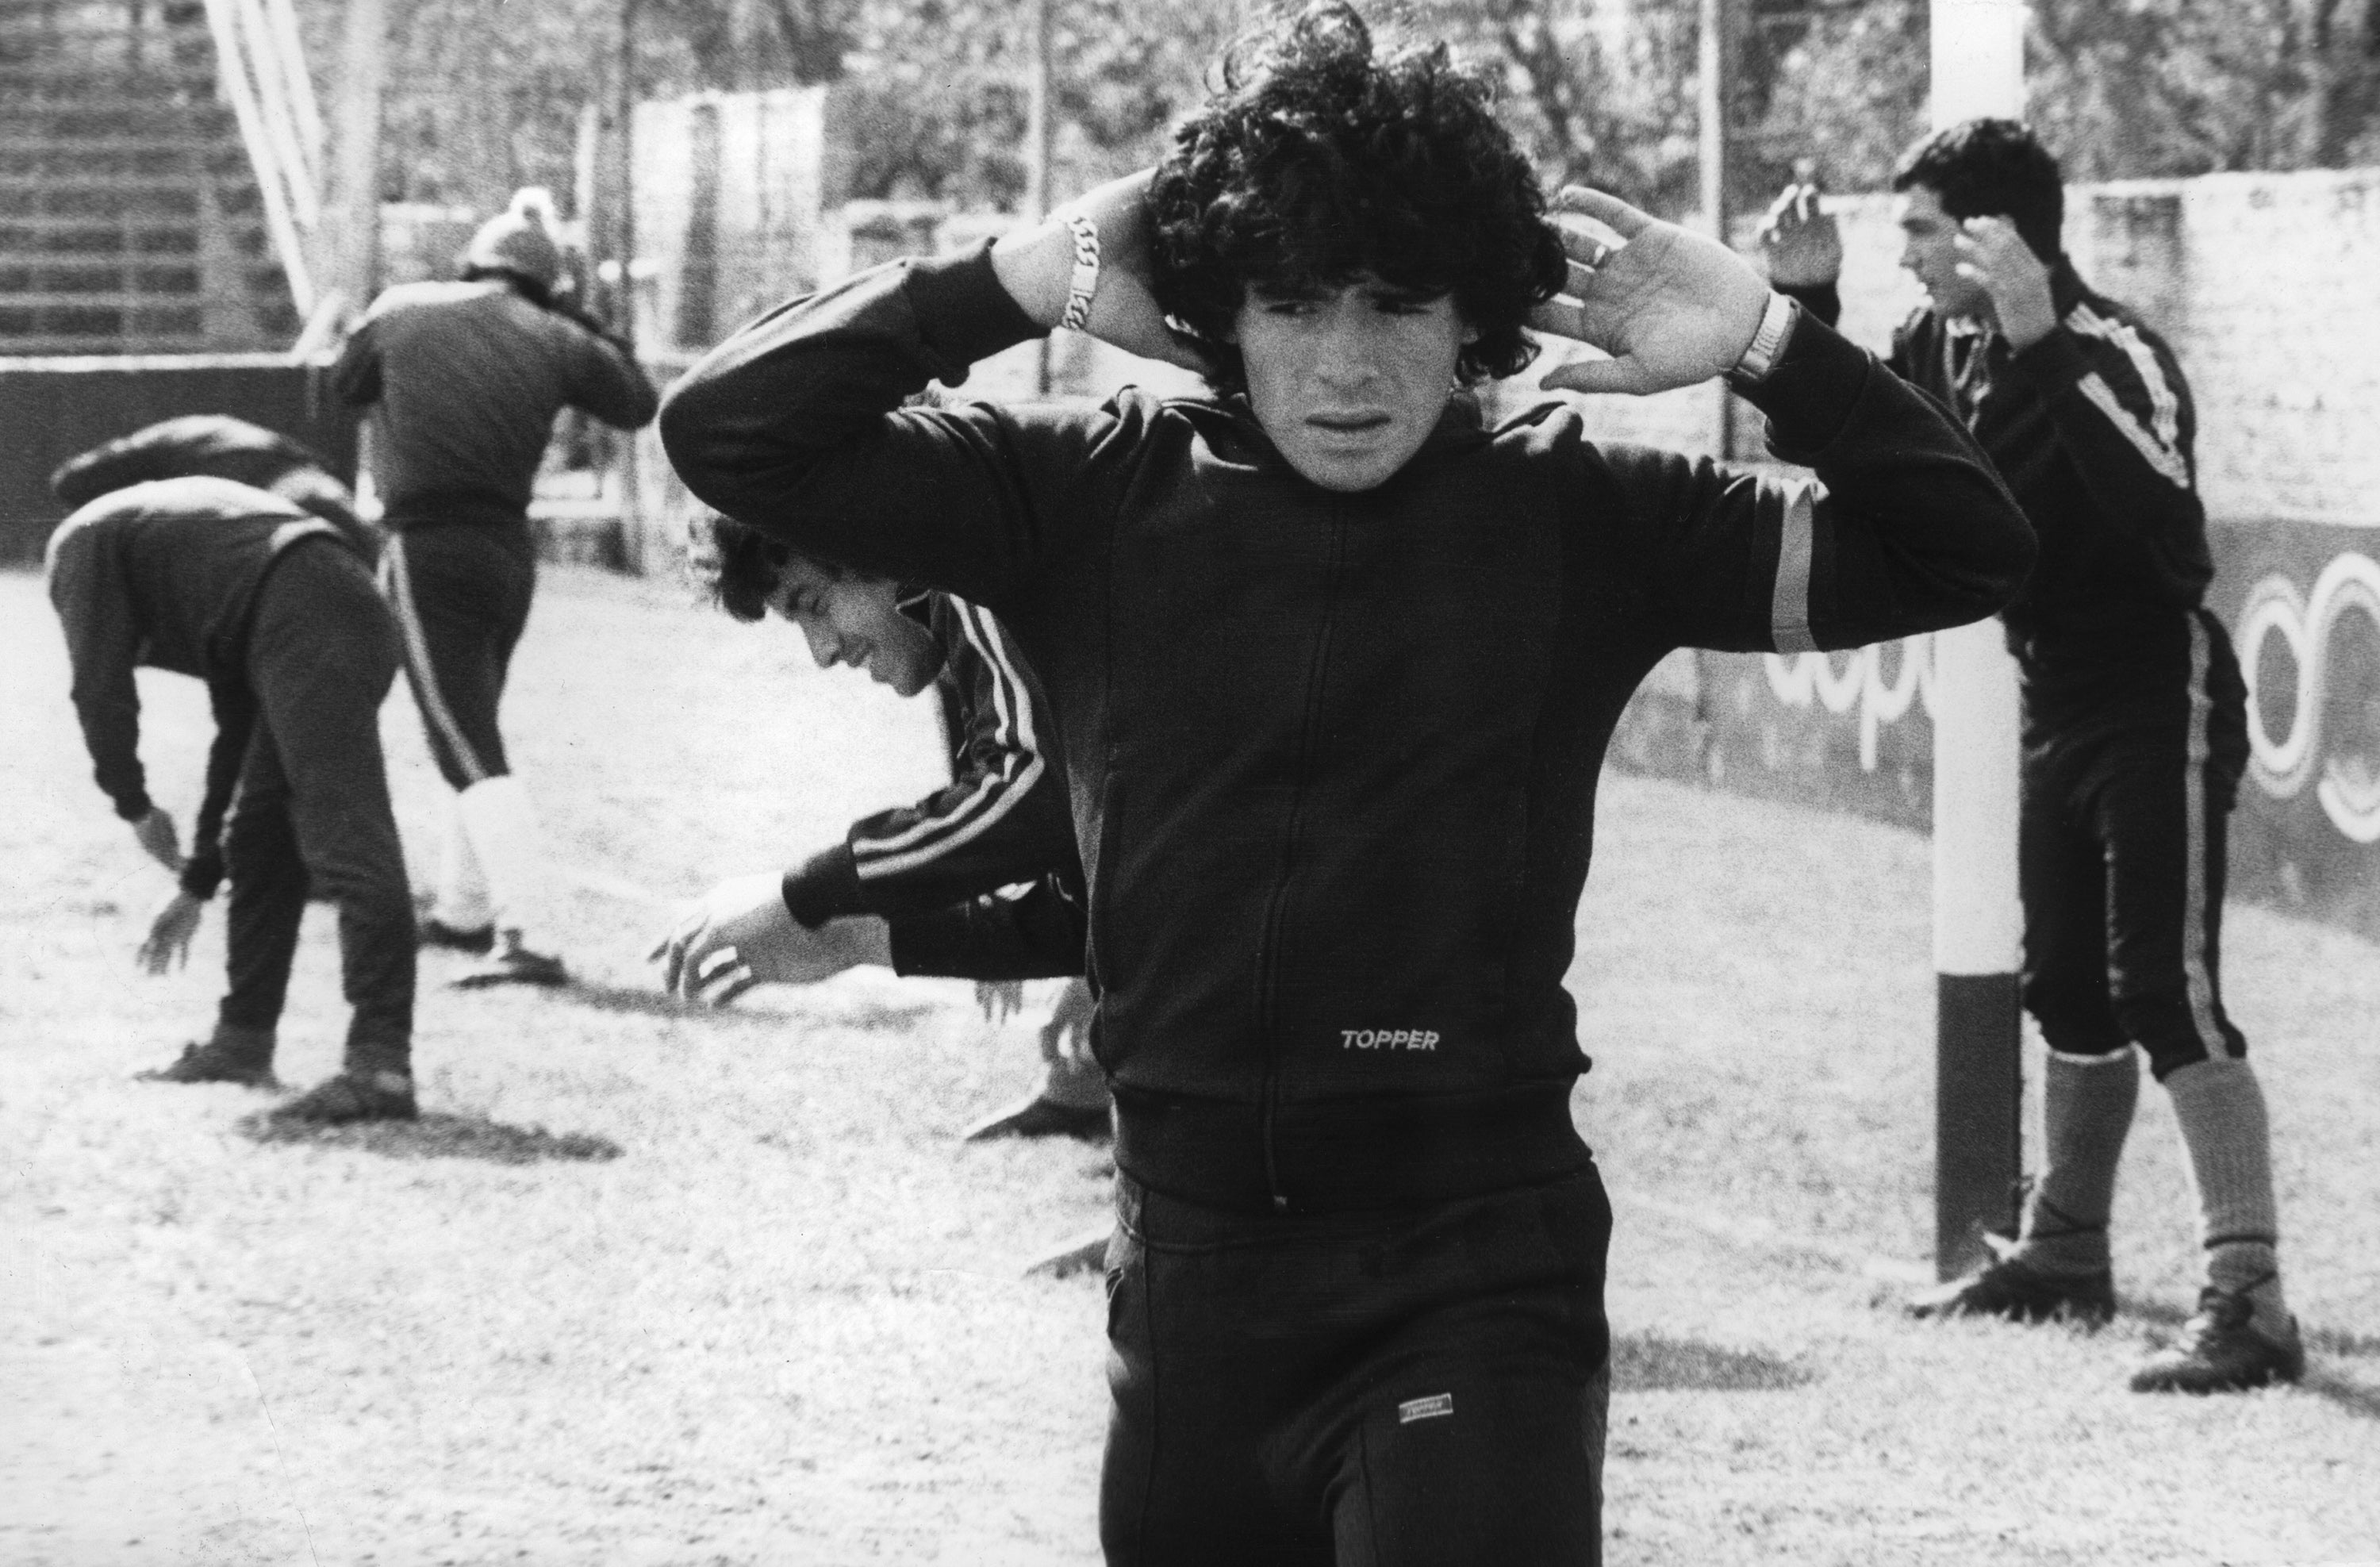 Diego Maradona, 16 años, calienta el 12 de septiembre de 1977 en Buenos Aires. Maradona nació el 30 de octubre de 1960 en Villa Fiorito, uno de los suburbios más pobres de Buenos Aires. La mayoría de la gente lo considera el mejor jugador de fútbol de la historia. Empezó a jugar cuando tenía 9 años. Su primer club fue el Cebollitas, el equipo juvenil de Argentinos Juniors. Debido a su talento desconocido, pronto obtuvo el apodo “Pibe de Oro”, que literalmente significa “Golden Boy”. Jugó hasta los 15 años para el equipo juvenil. A los 16 años debutó en el fútbol profesional con Argentinos Juniors. Y unos meses después ya debutó en la selección de Argentina.&nbsp;